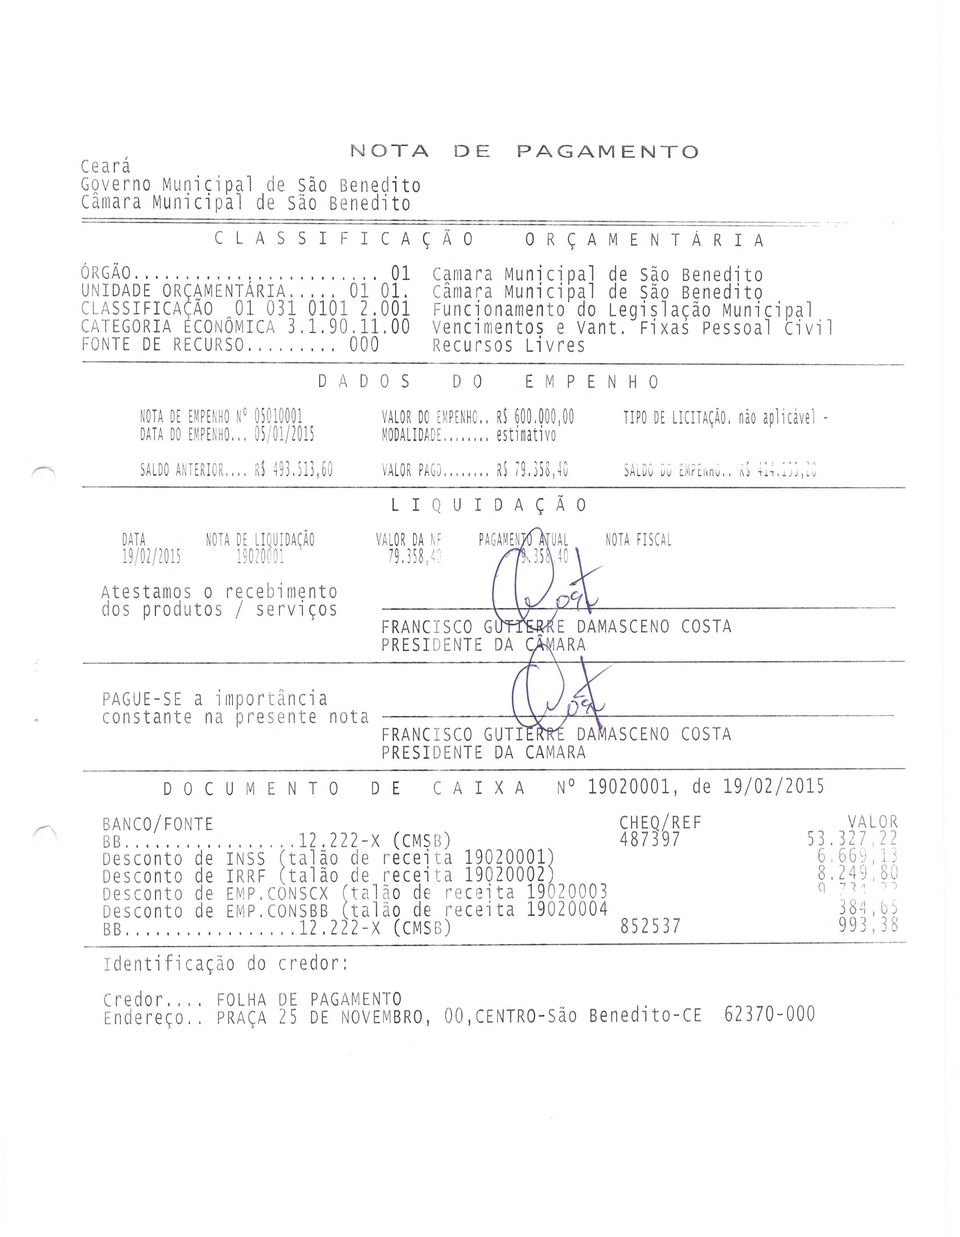 Fixas Pessoal Civil FONTE DE RECURSO... 000 Recursos Livres DADOS DO EMPENHO NOTA DE EMPENHO N 05010001 VALOR II EOPENNC.